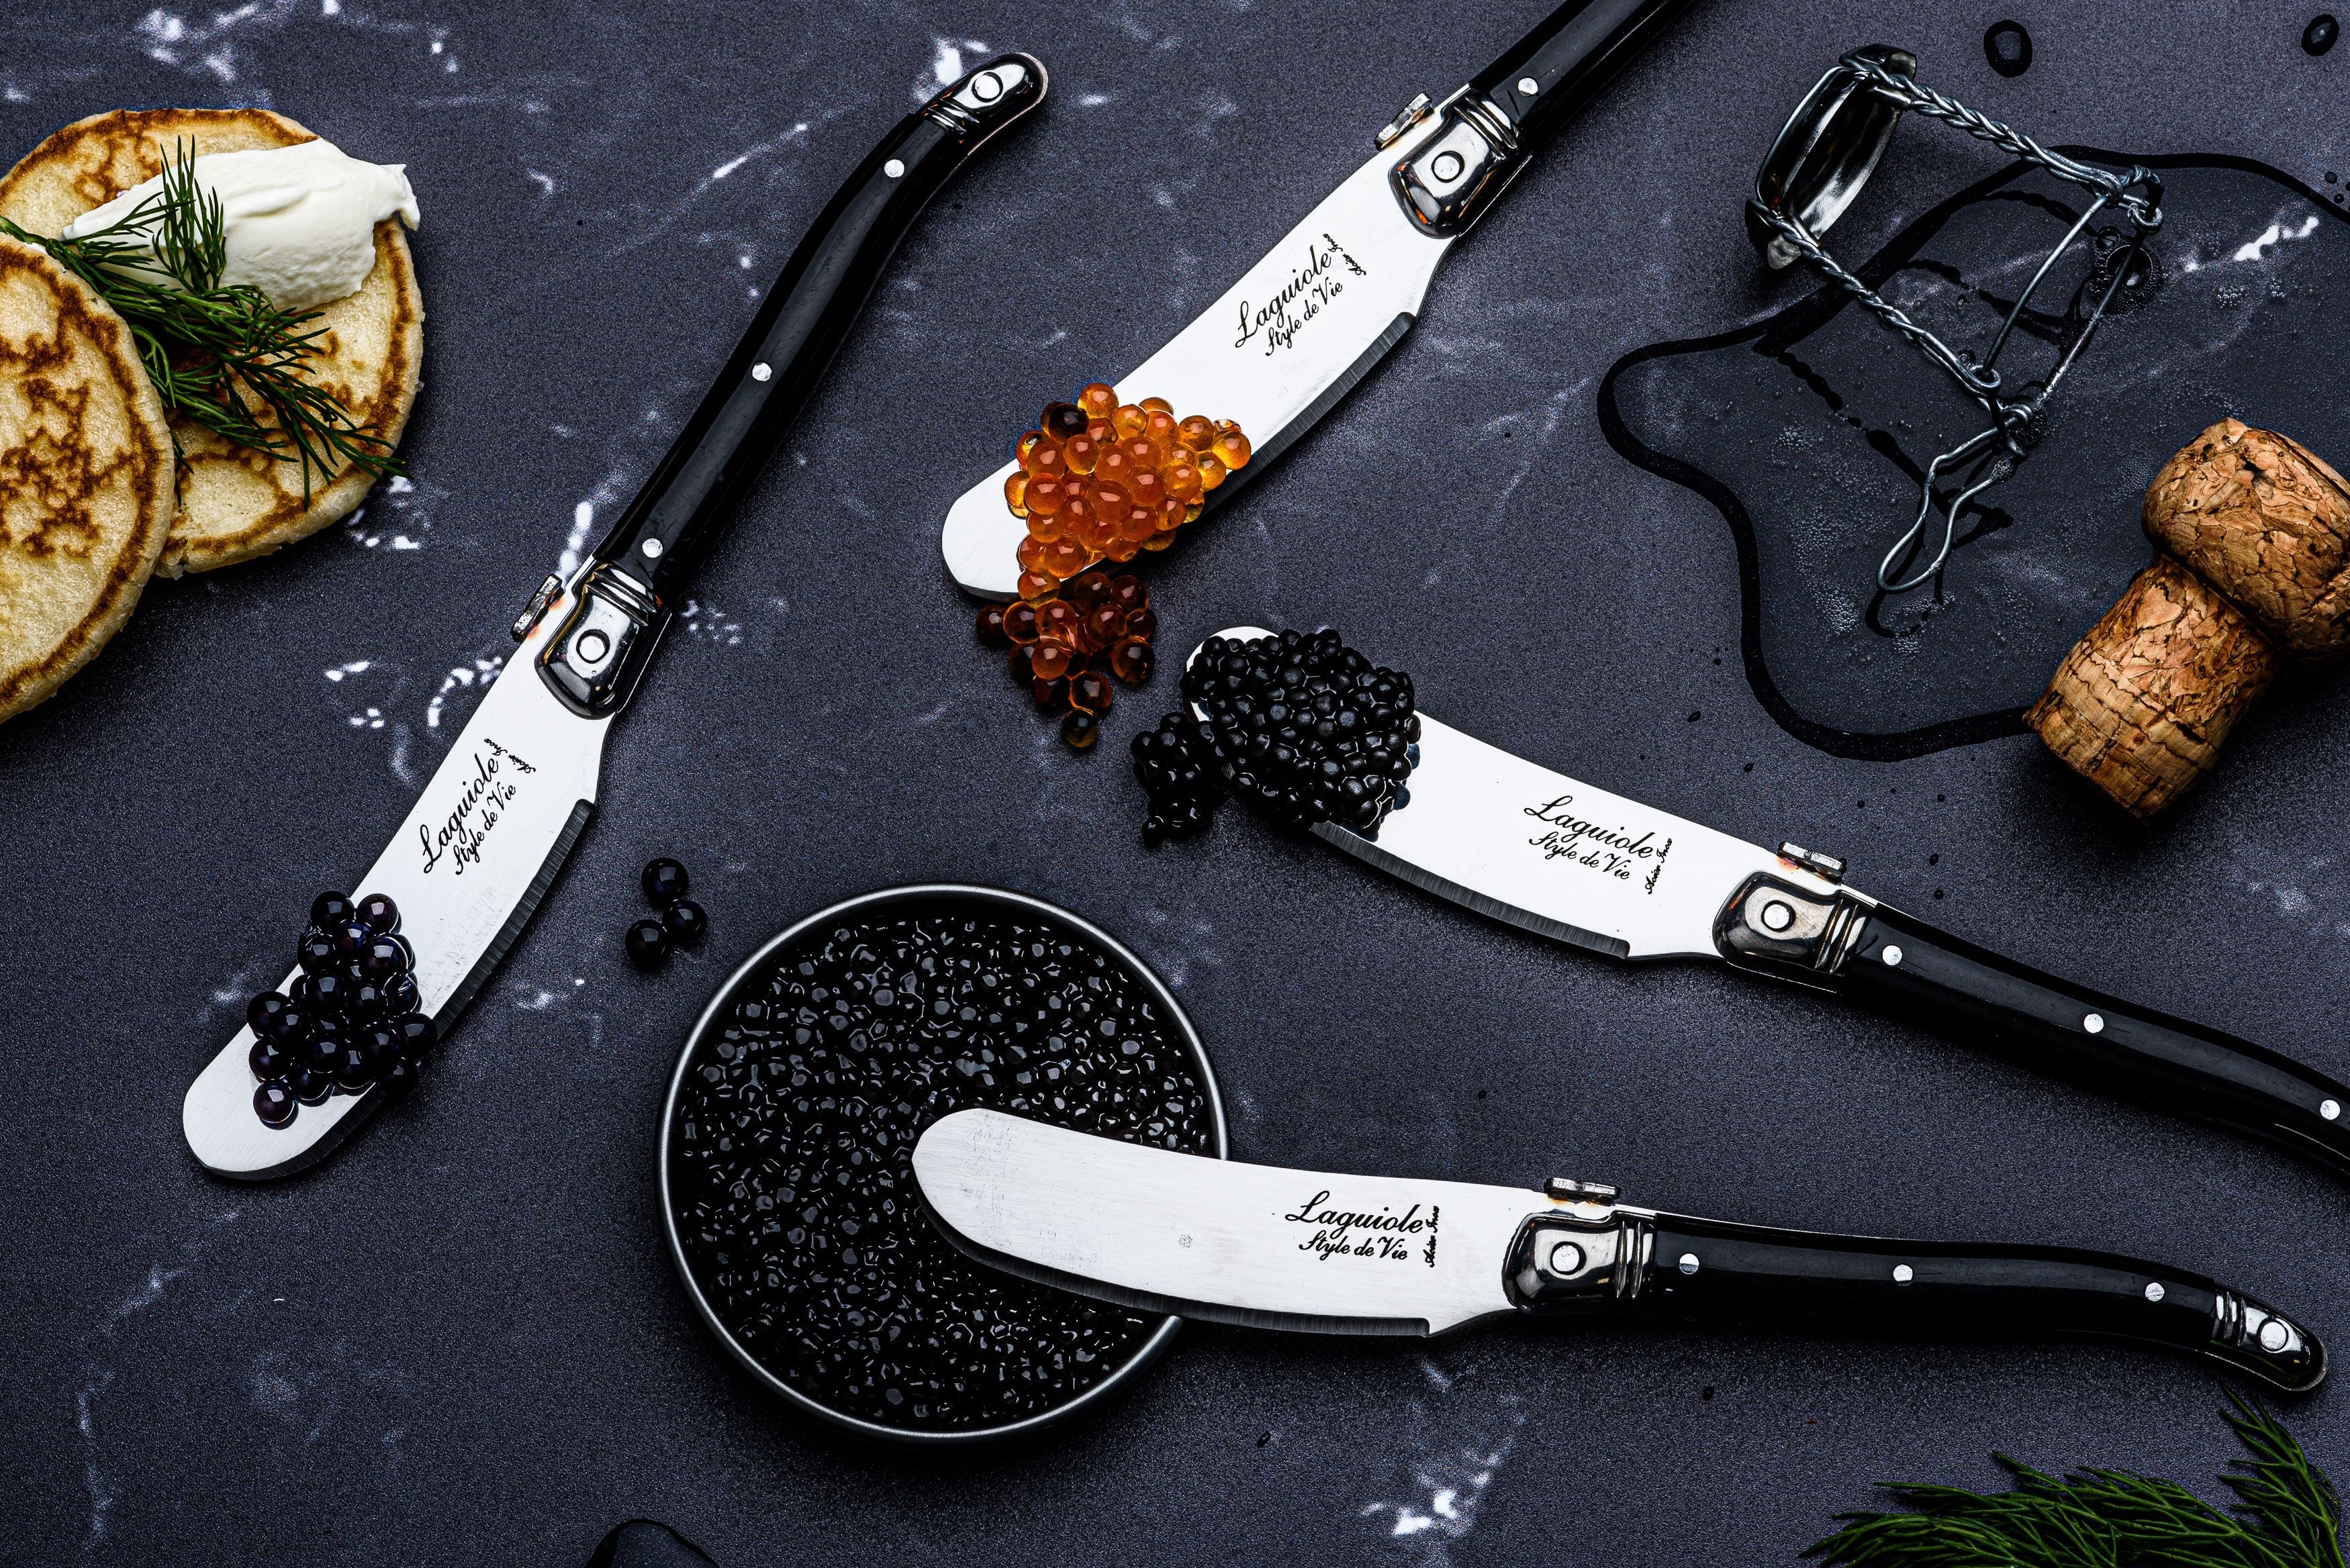 Estilo de Vie Authentique Laguiole Premium Línea Knives de mantequilla de 4 piezas, negro